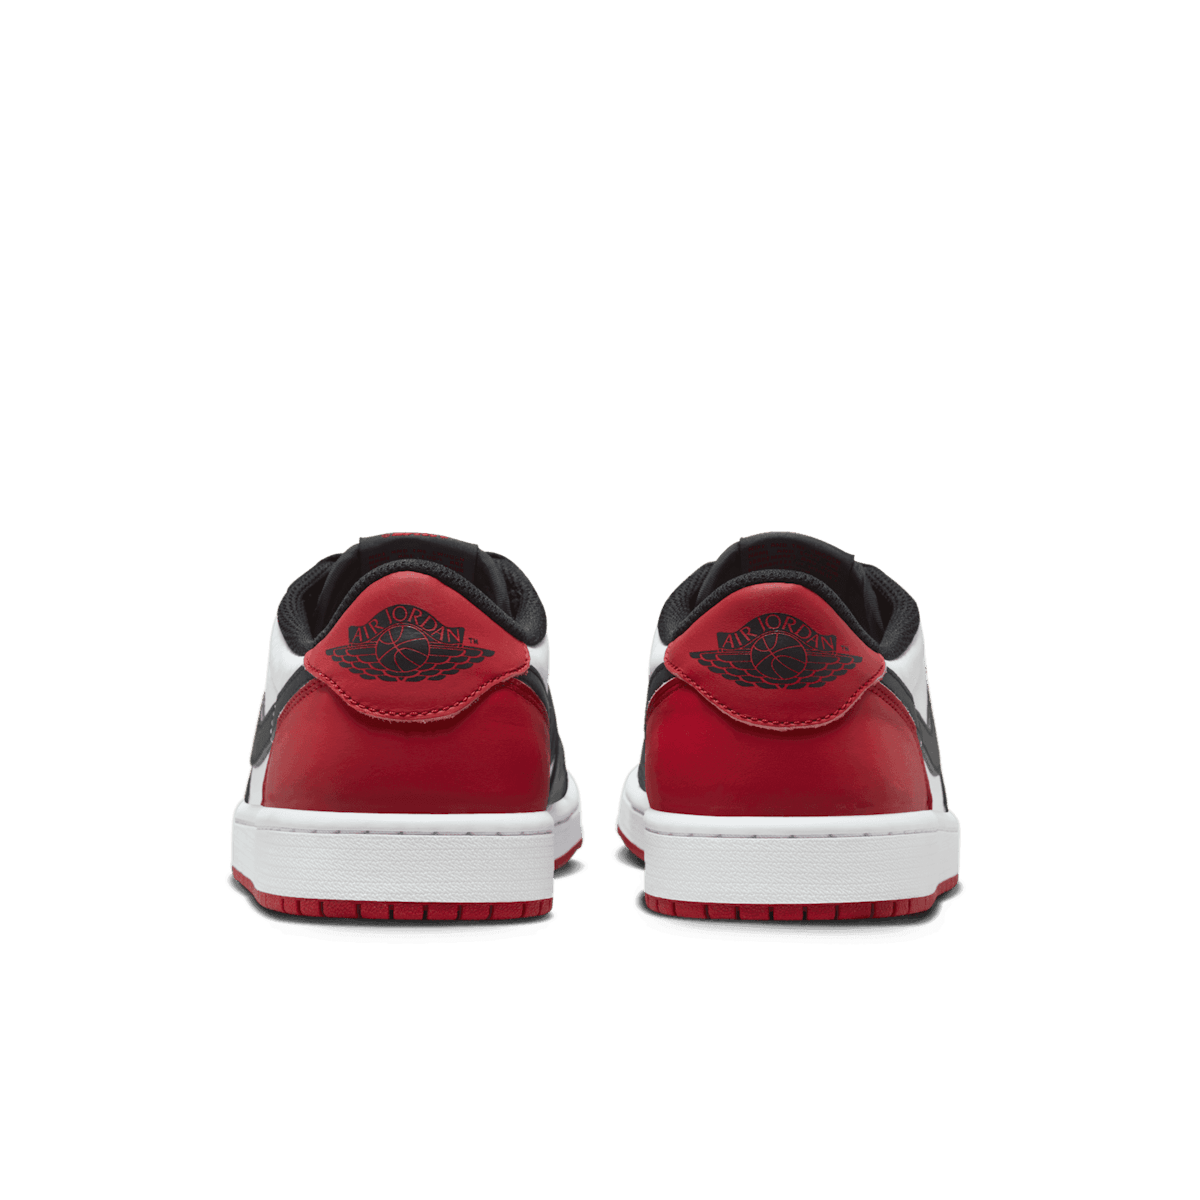 Air Jordan 1 Retro Low OG Black Toe - CZ0790-106 Raffles and Release Date